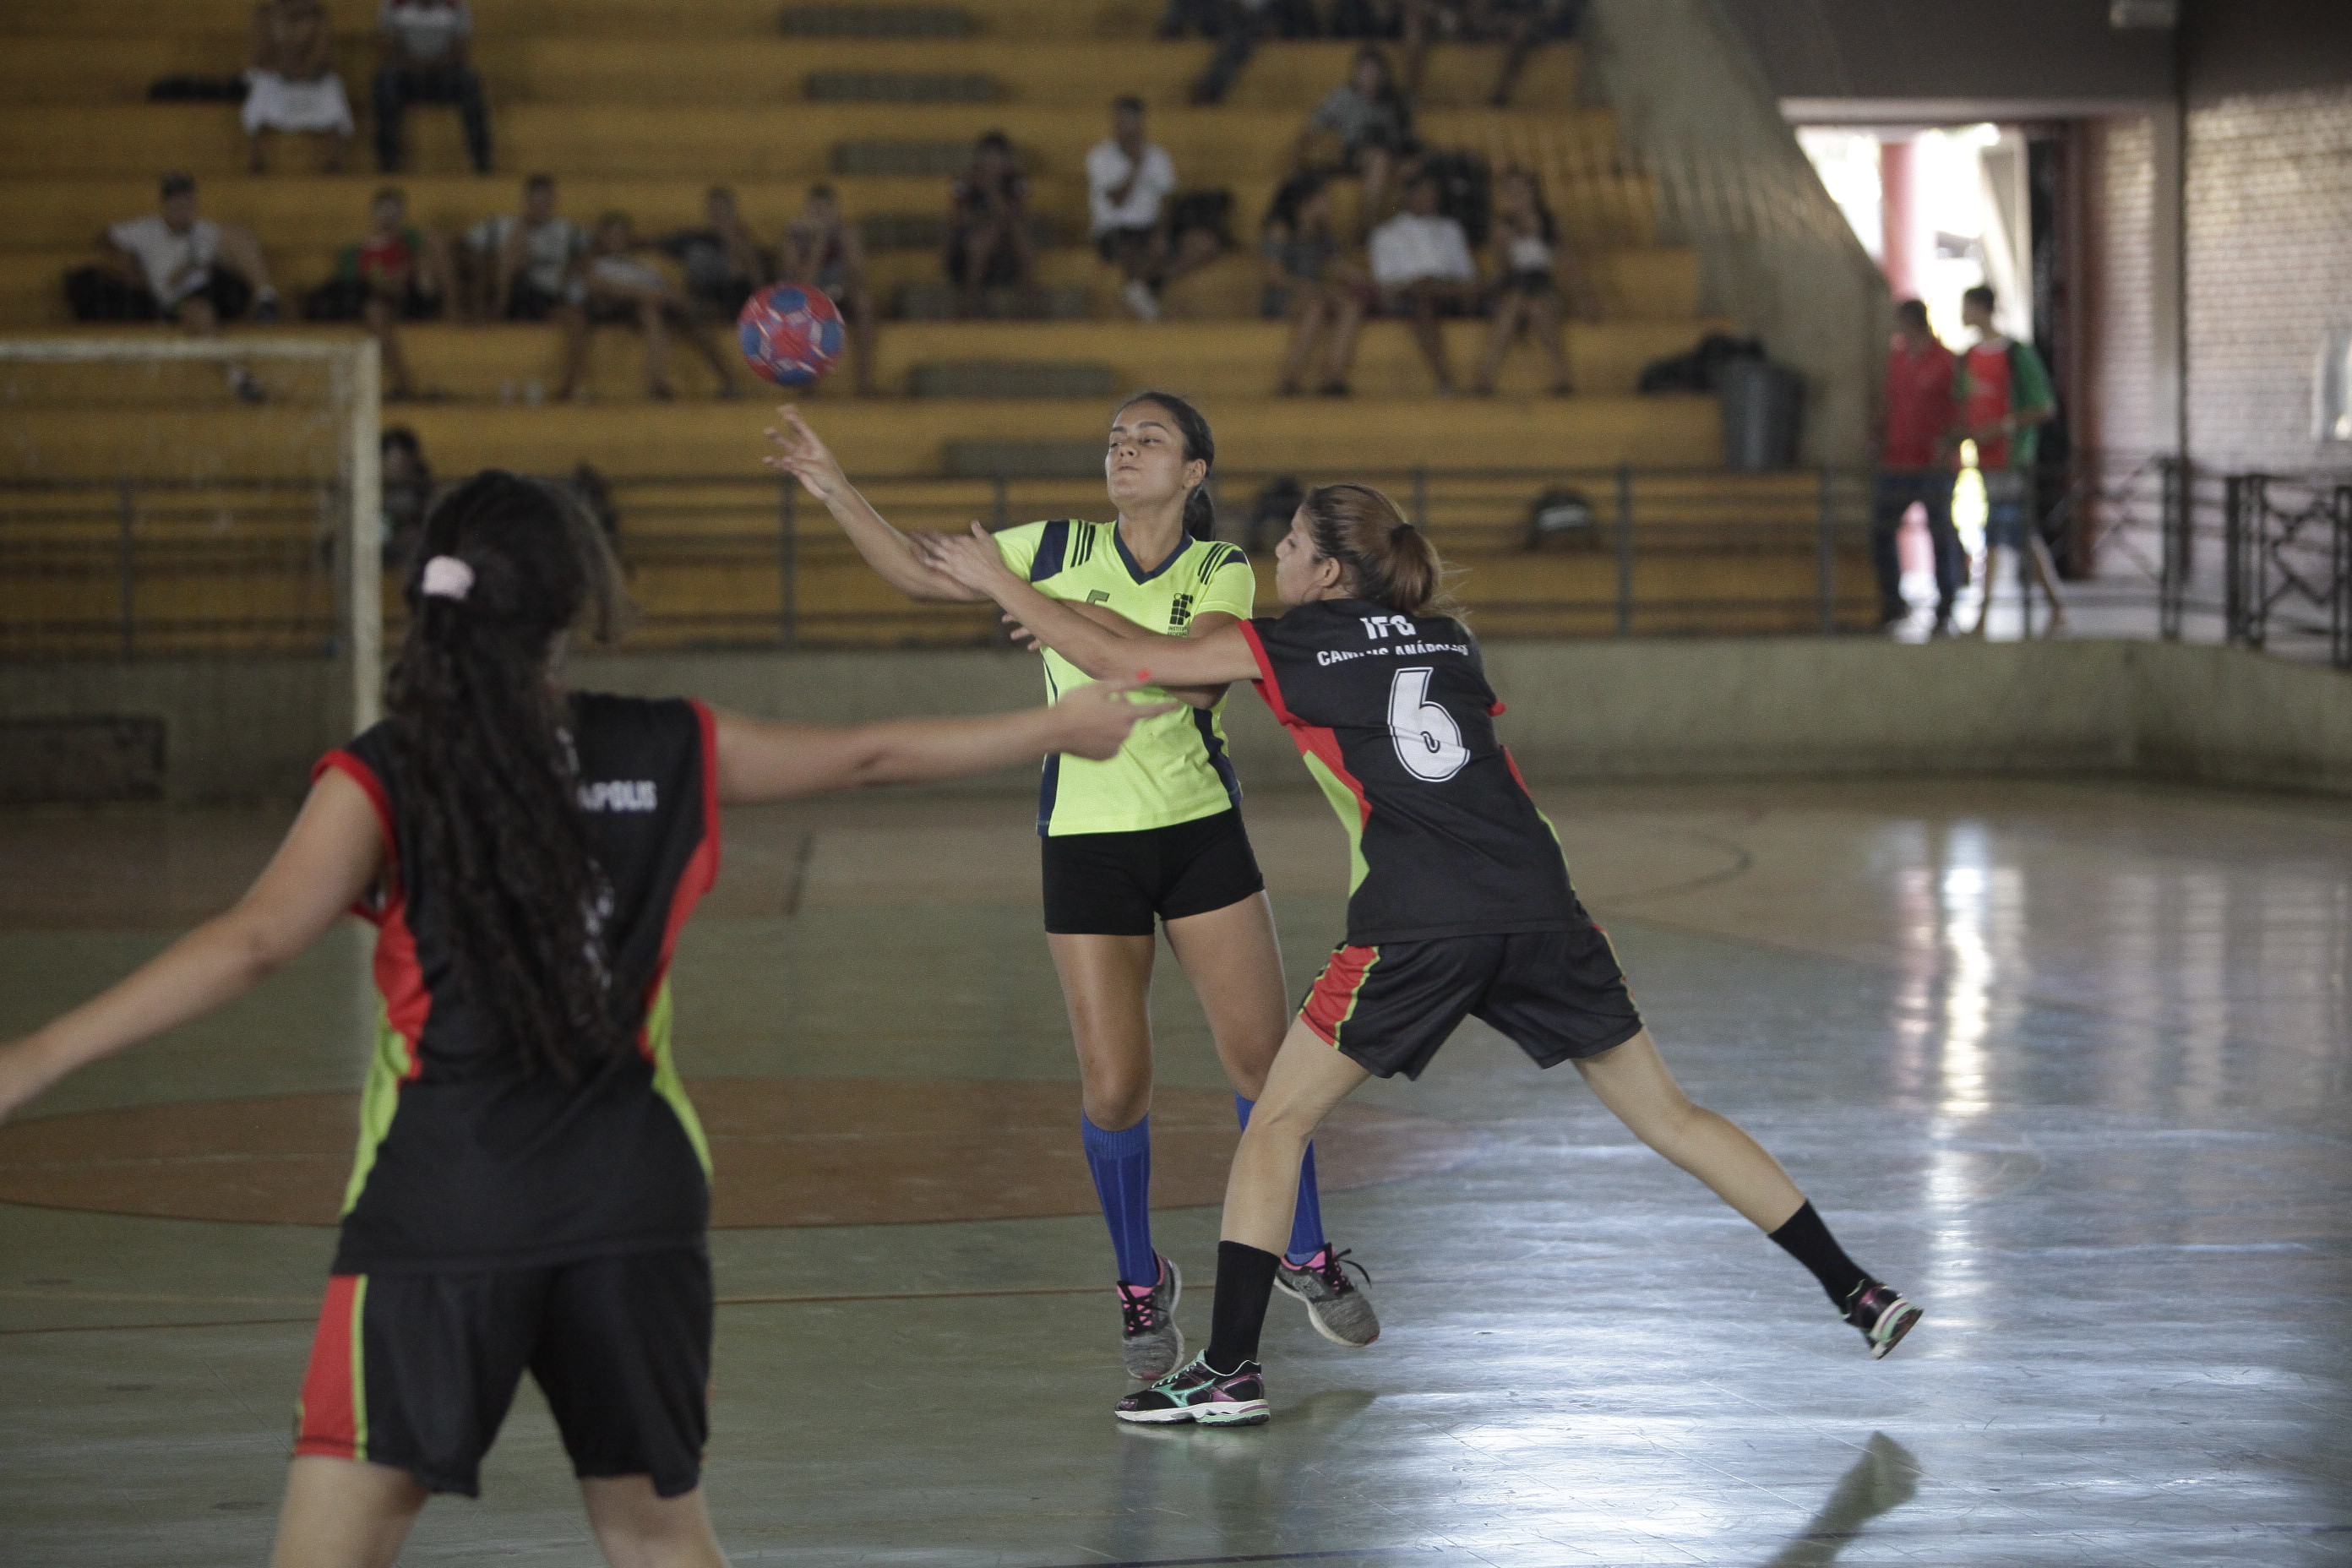 Equipes de futsal feminino se enfrentam em partida no JIF Goiás, em Jataí